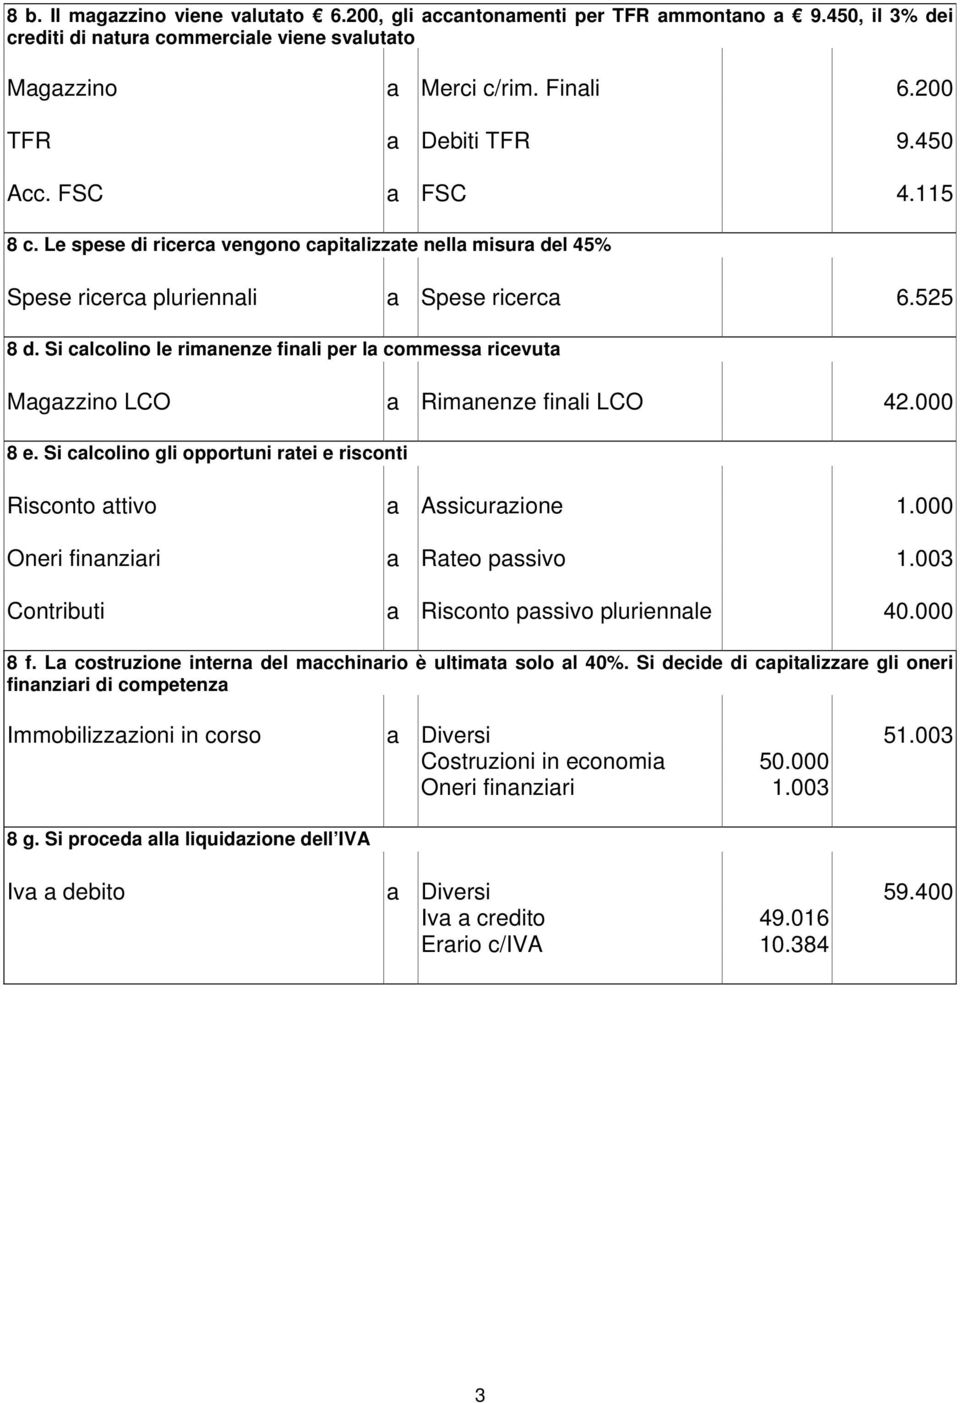 Si calcolino le rimanenze finali per la commessa ricevuta Magazzino LCO a Rimanenze finali LCO 42.000 8 e. Si calcolino gli opportuni ratei e risconti Risconto attivo a Assicurazione 1.